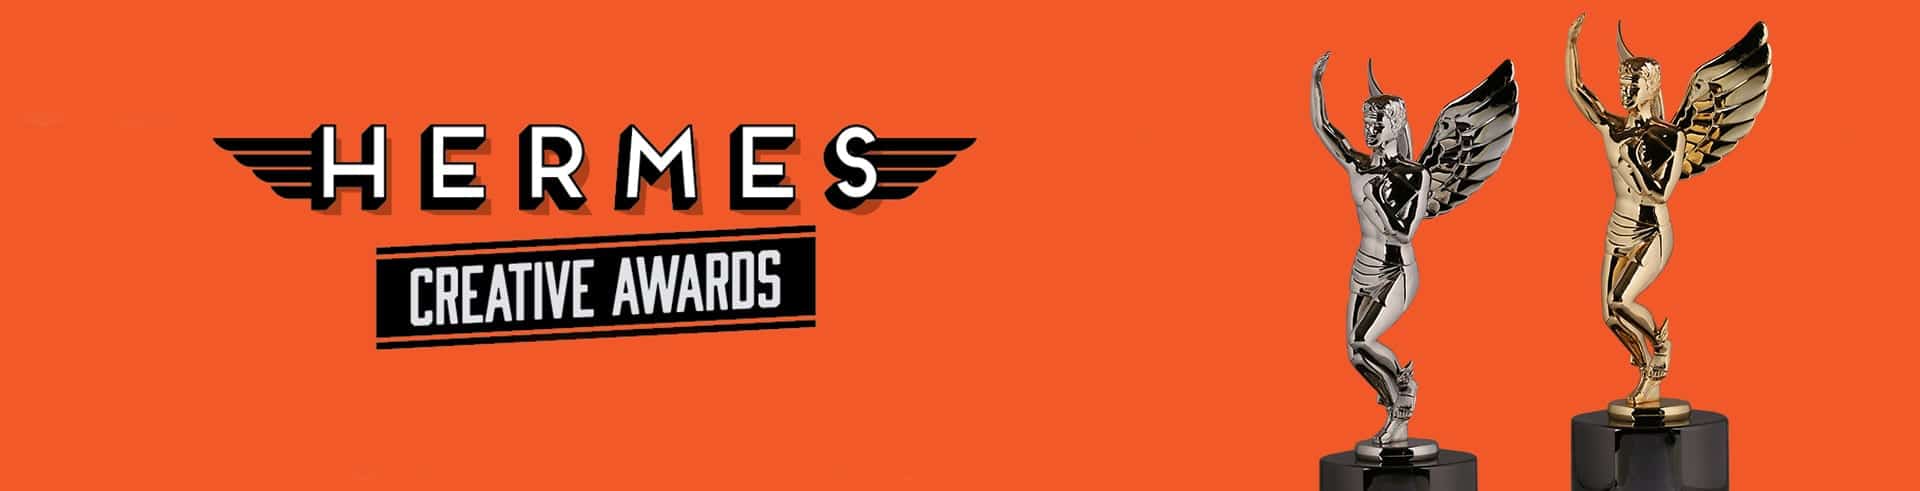 Hermes Creative Awards Banner